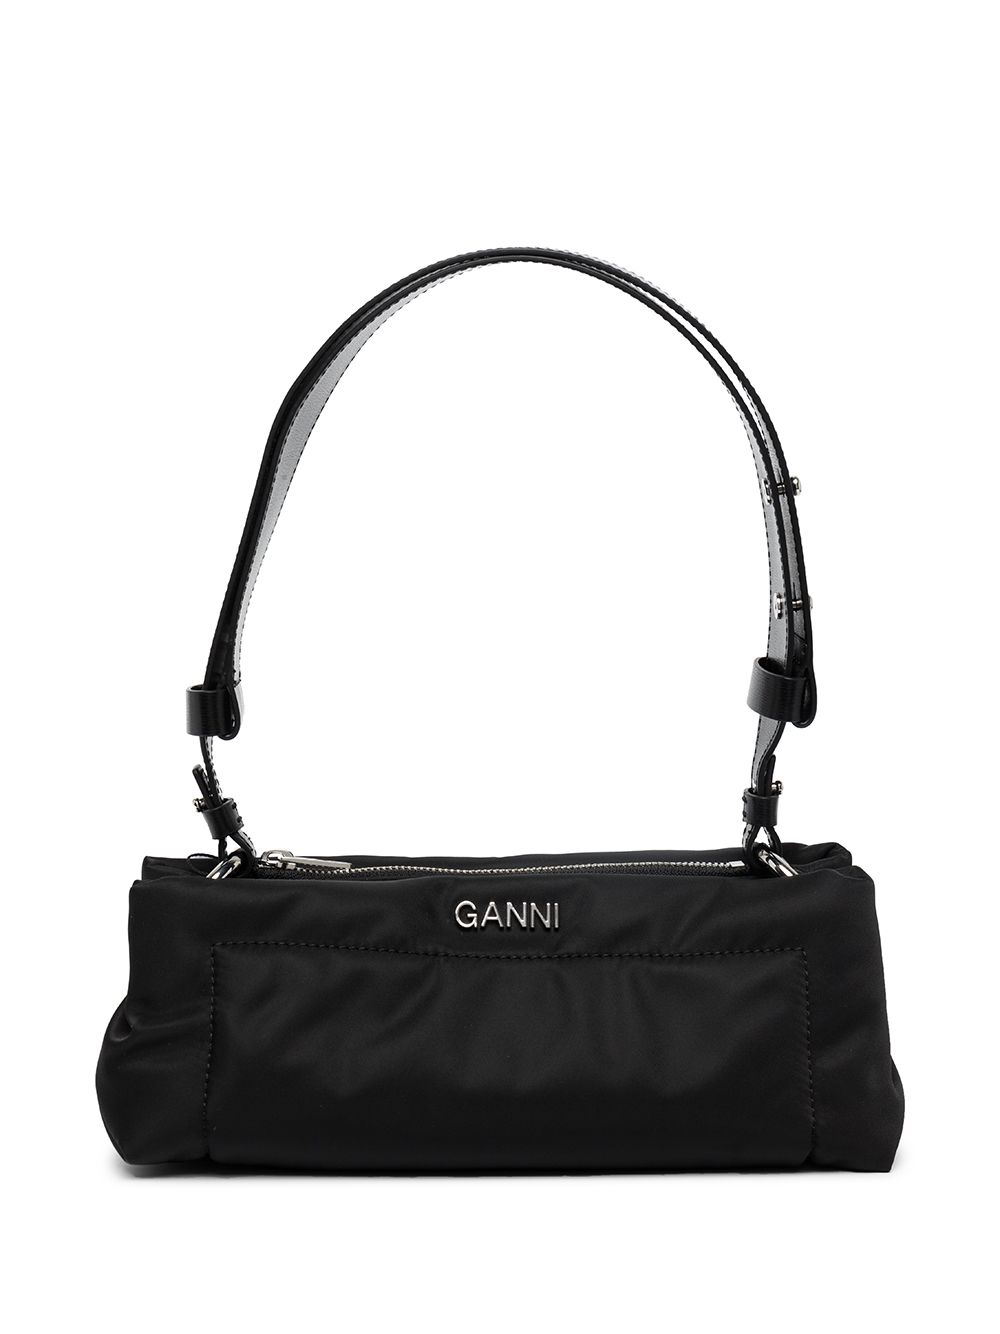 GANNI Pillow shoulder bag - Black